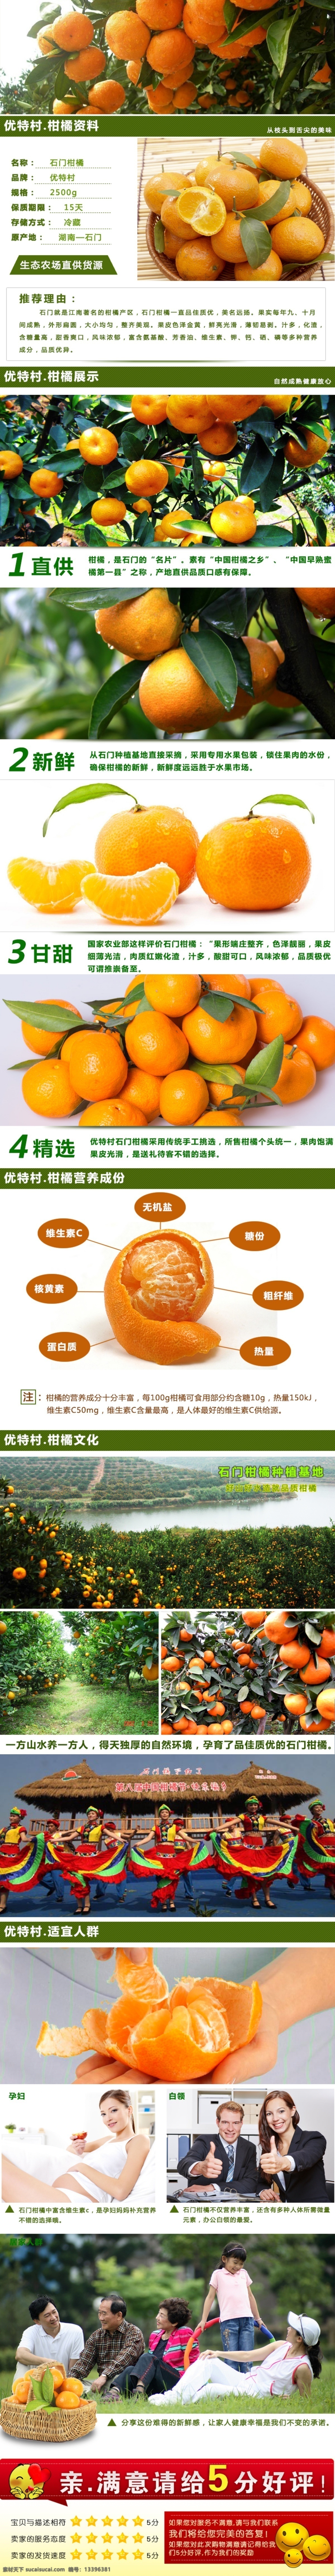 湖南 湘西 柑橘 详情 天猫淘宝素材 柑橘叶 原创设计 原创淘宝设计